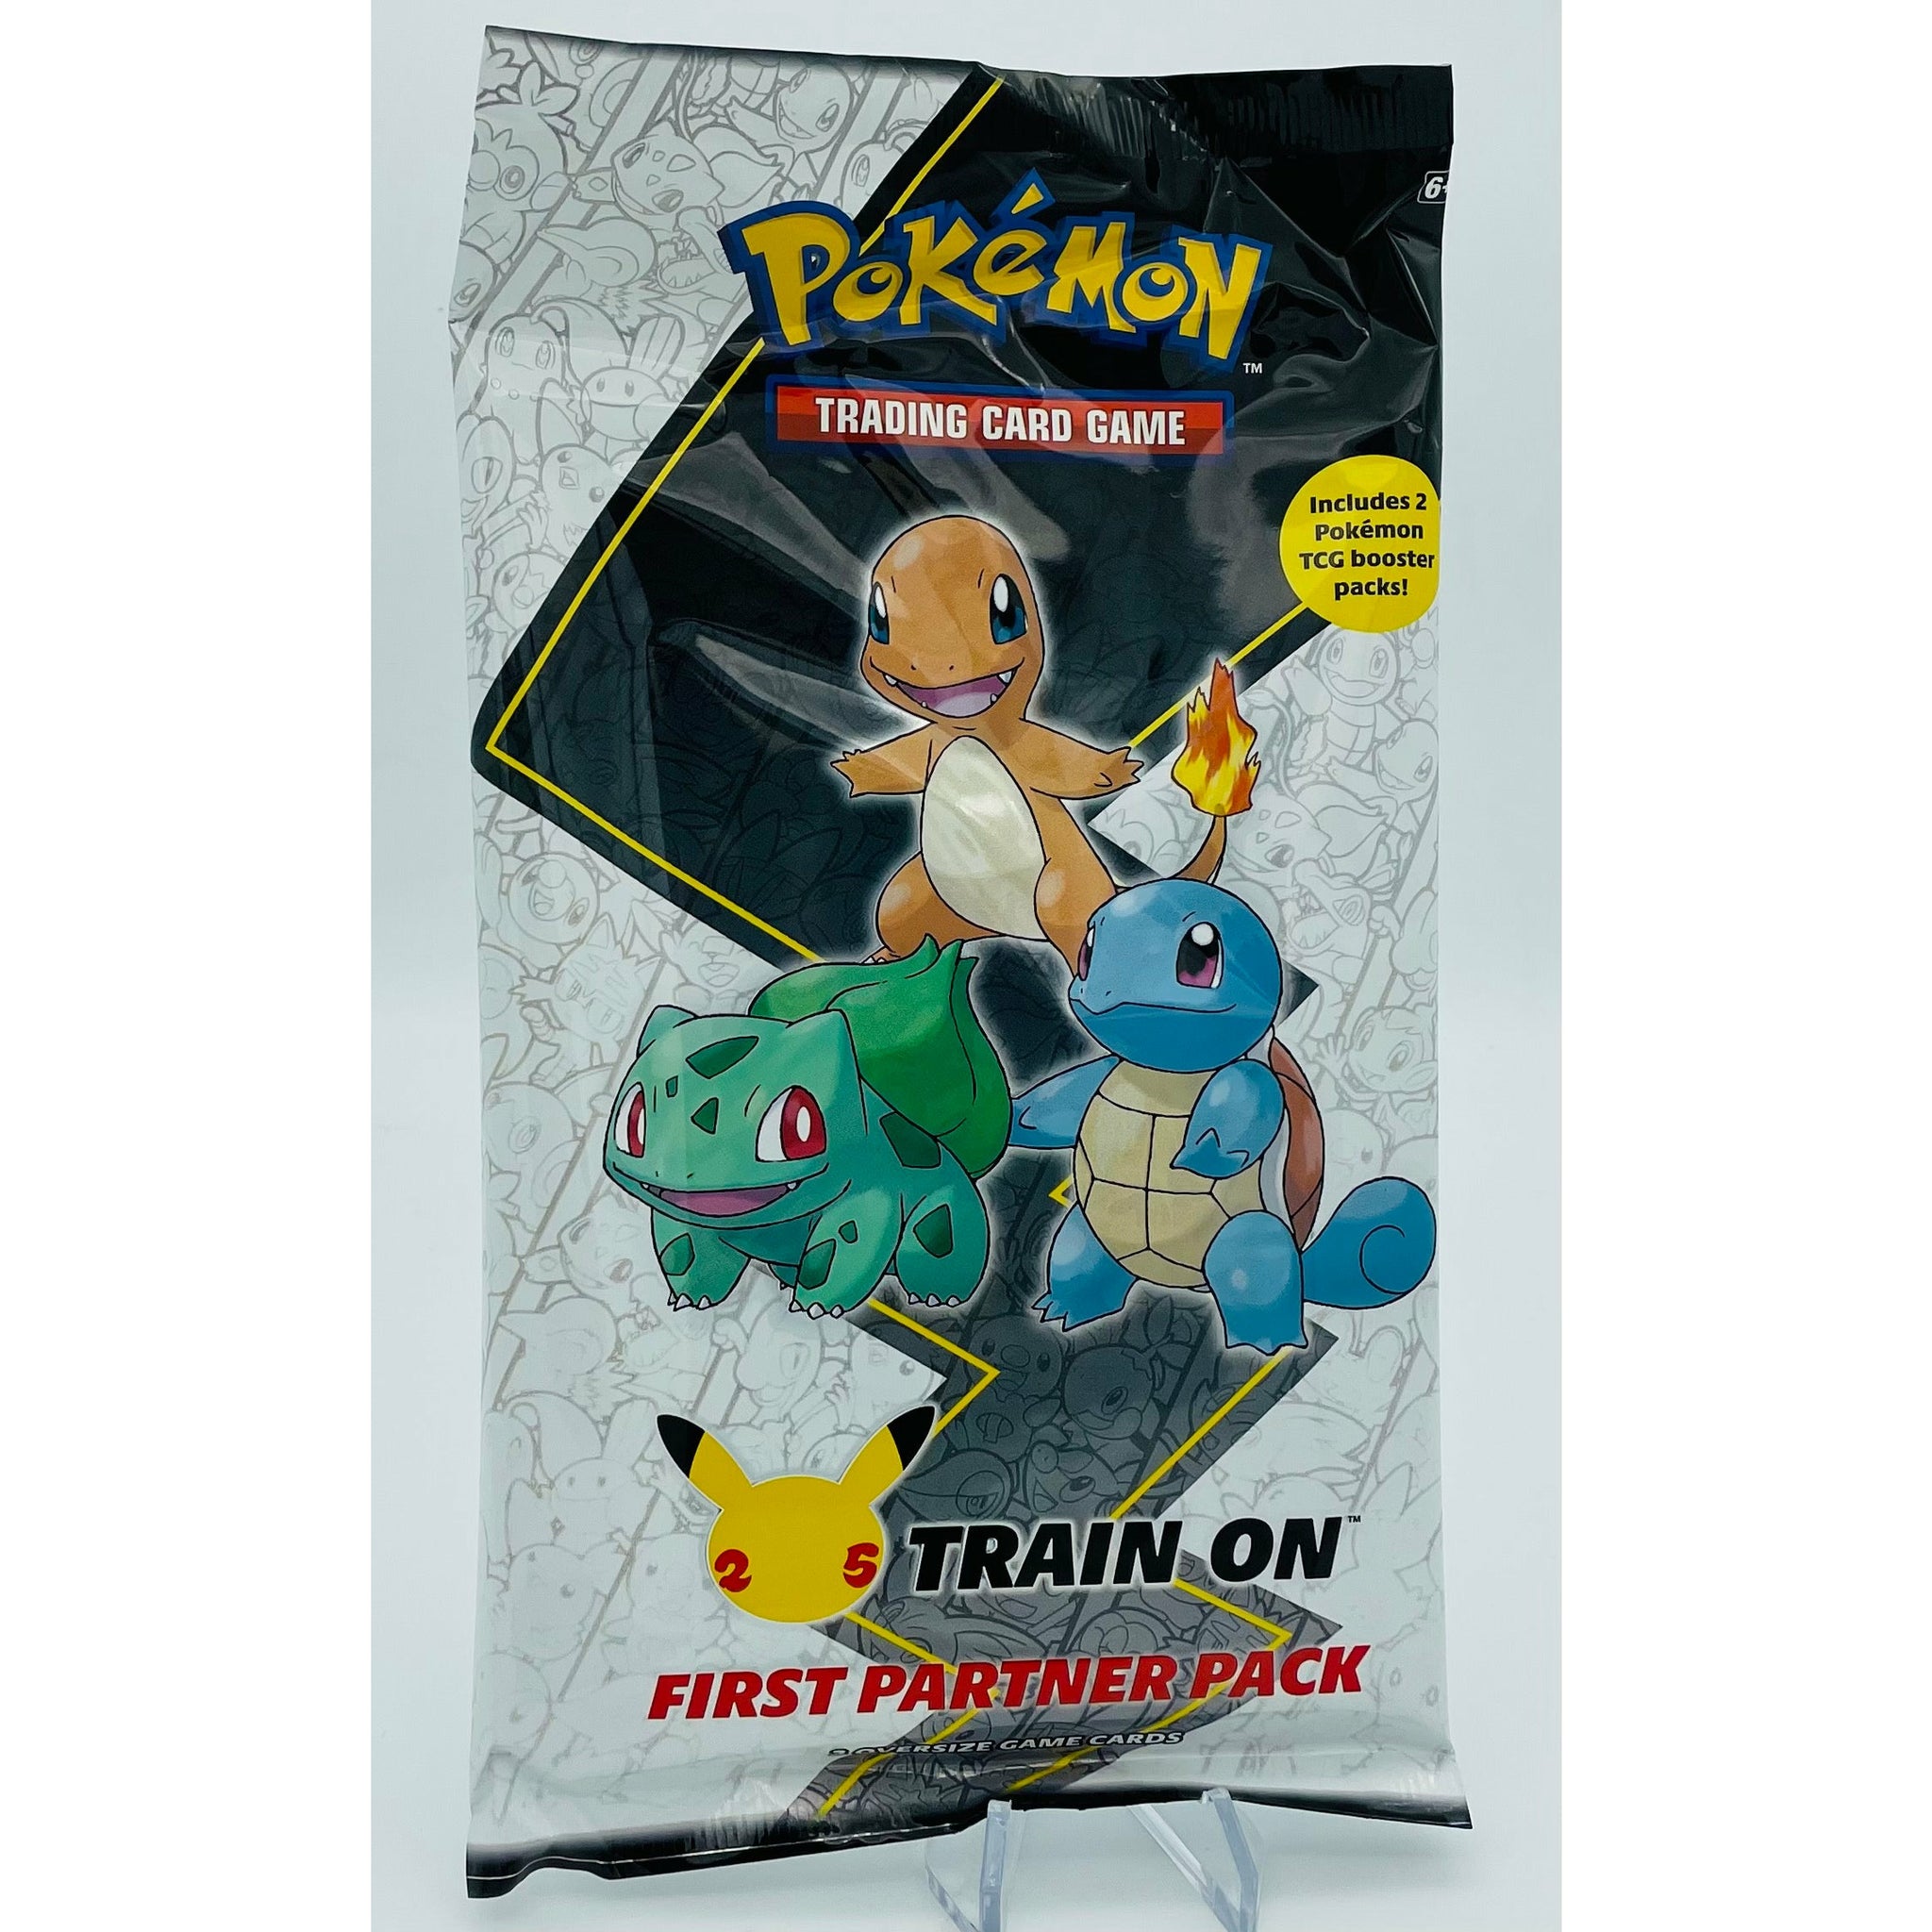 Pokemon TCG: First Partner Pack- 3 Jumbo KANTO Cards and 2 Pokemon Booster Packs